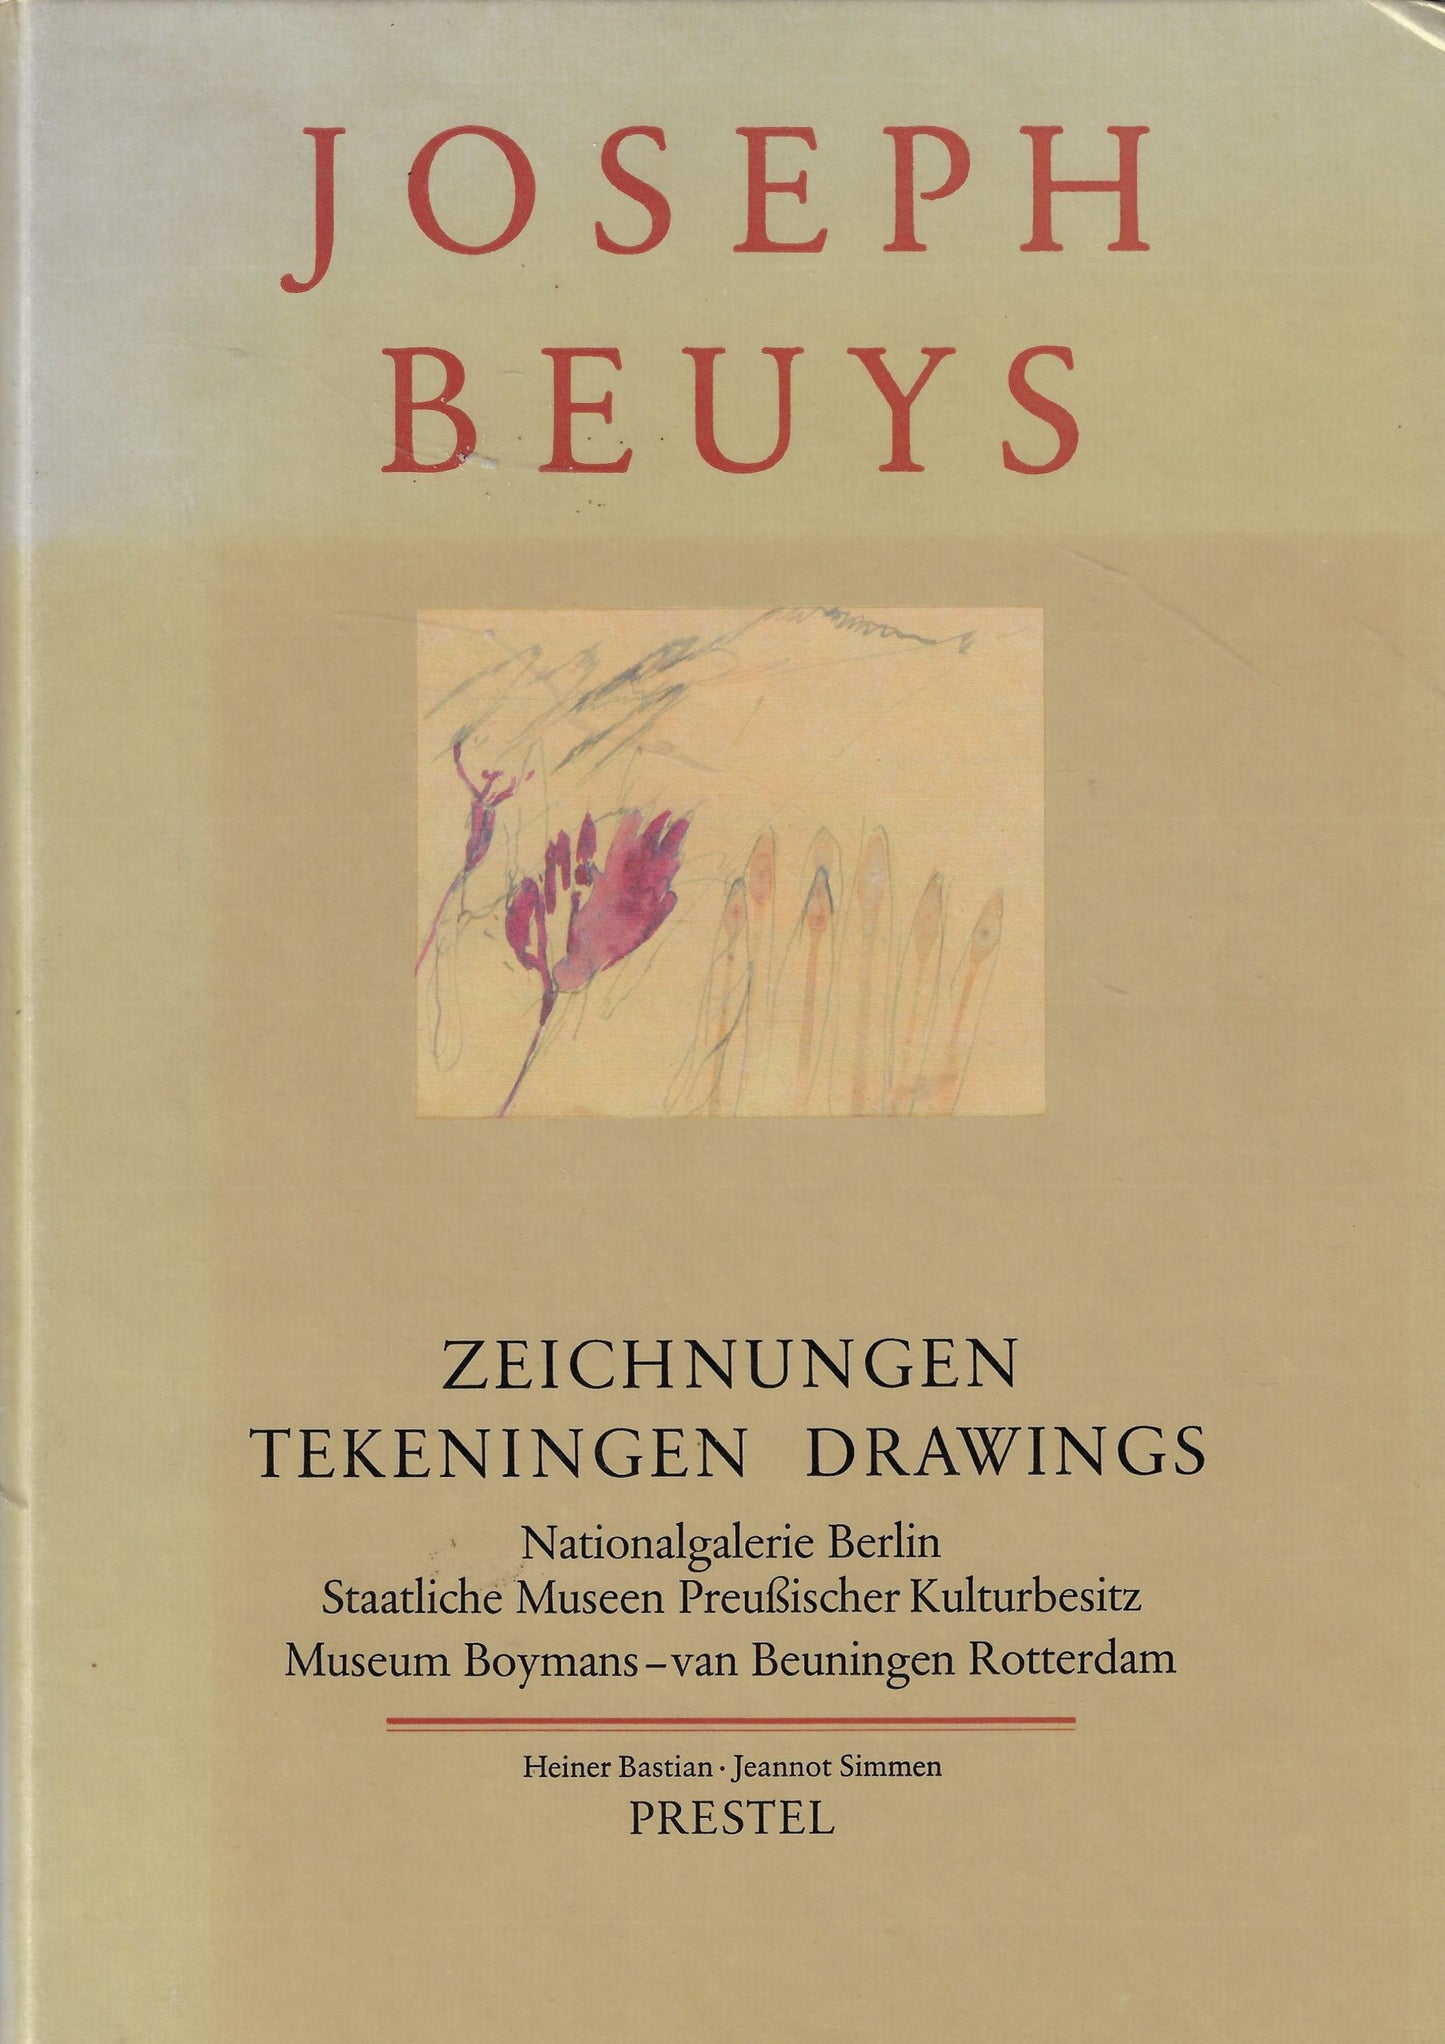 Joseph Beuys - Zeichnungen Tekeningen Drawings